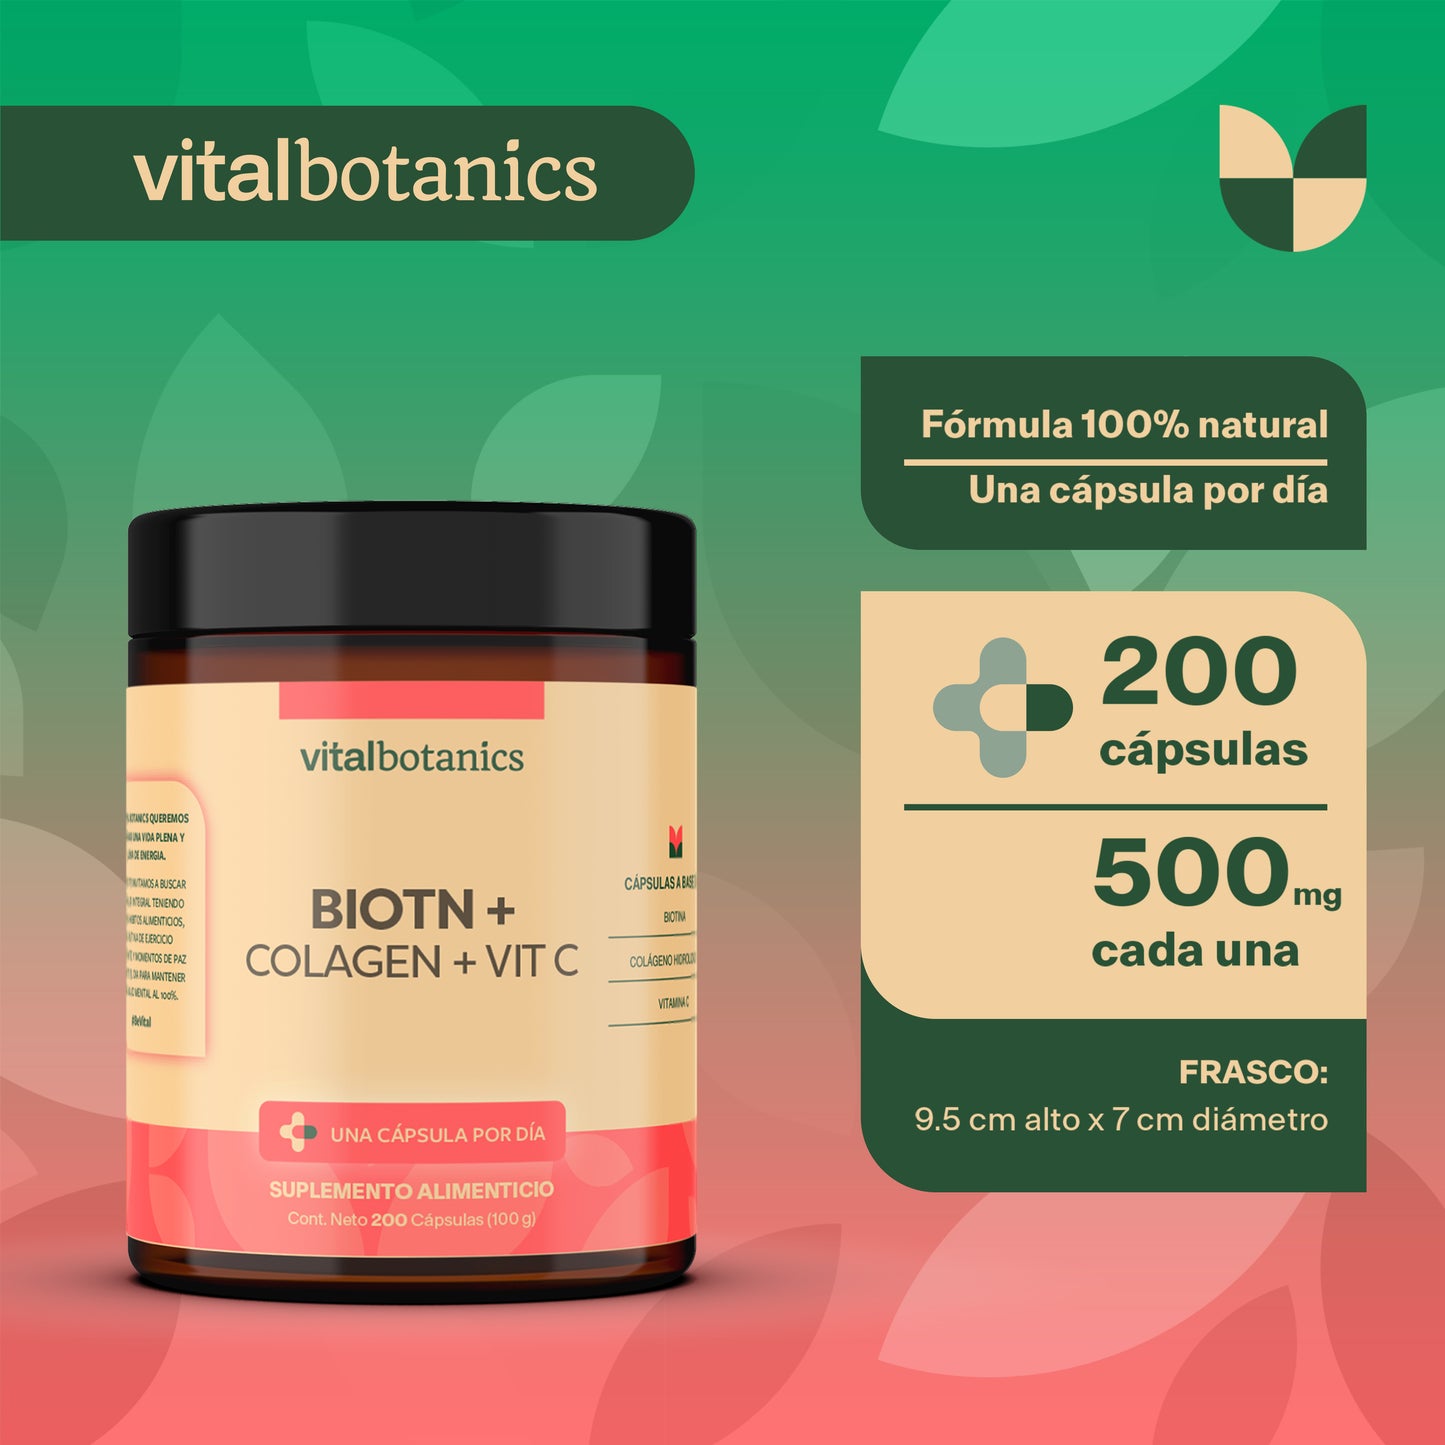 BIOTIN + COLAGEN + VIT C | Vitamina C / Ácido Ascórbico, Biotina y Colágeno Hidrolizado